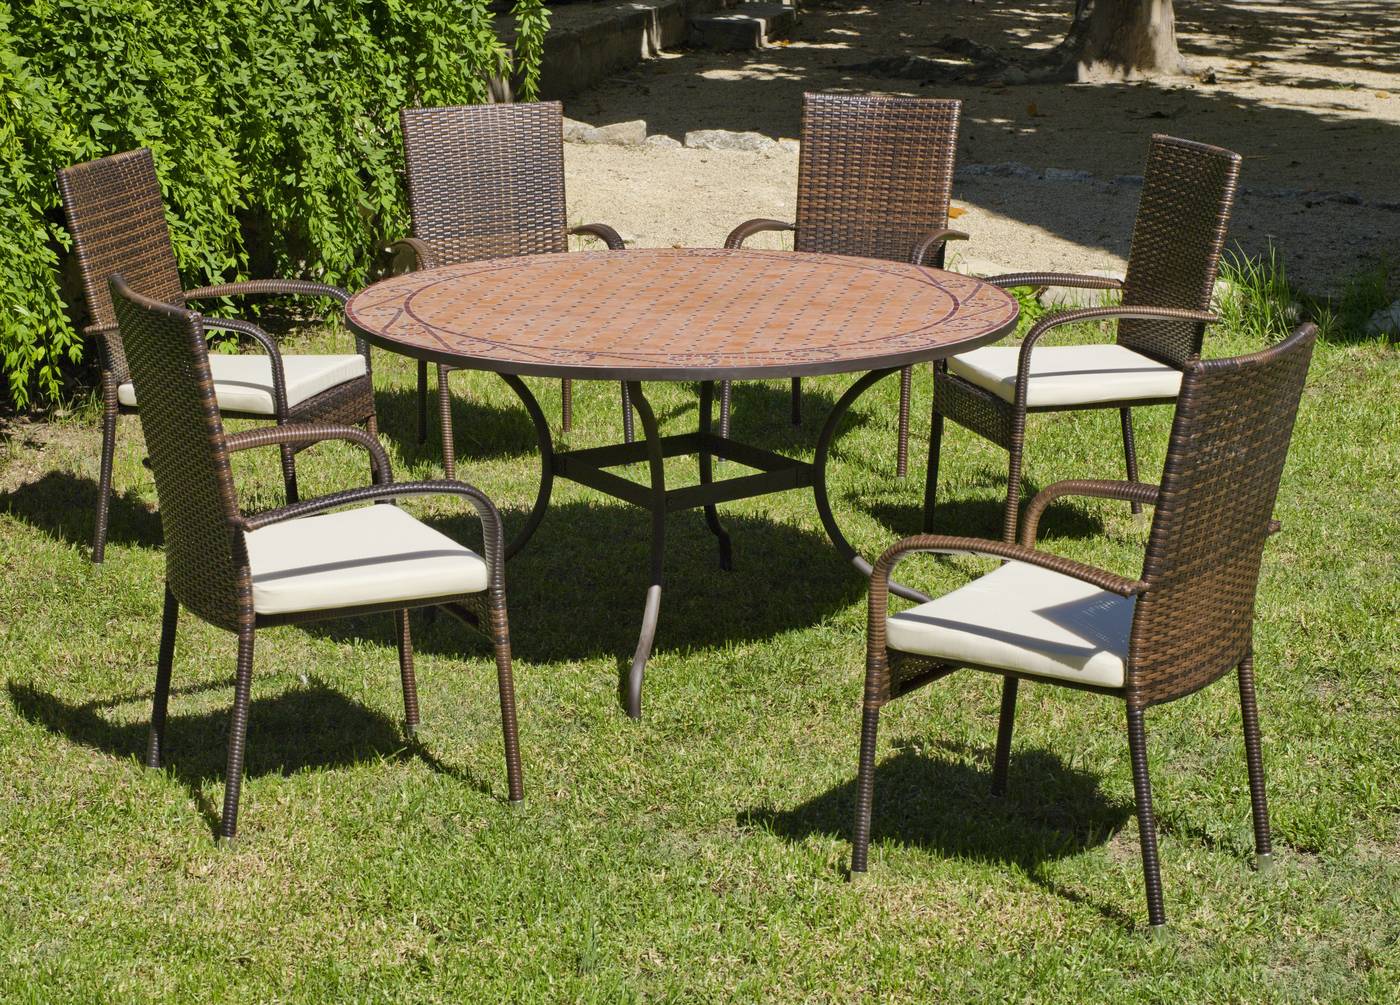 Conjunto de forja para jardín: 1 mesa con panel mosaico 140 cm. + 6 sillones de ratán sintético + 6 cojines